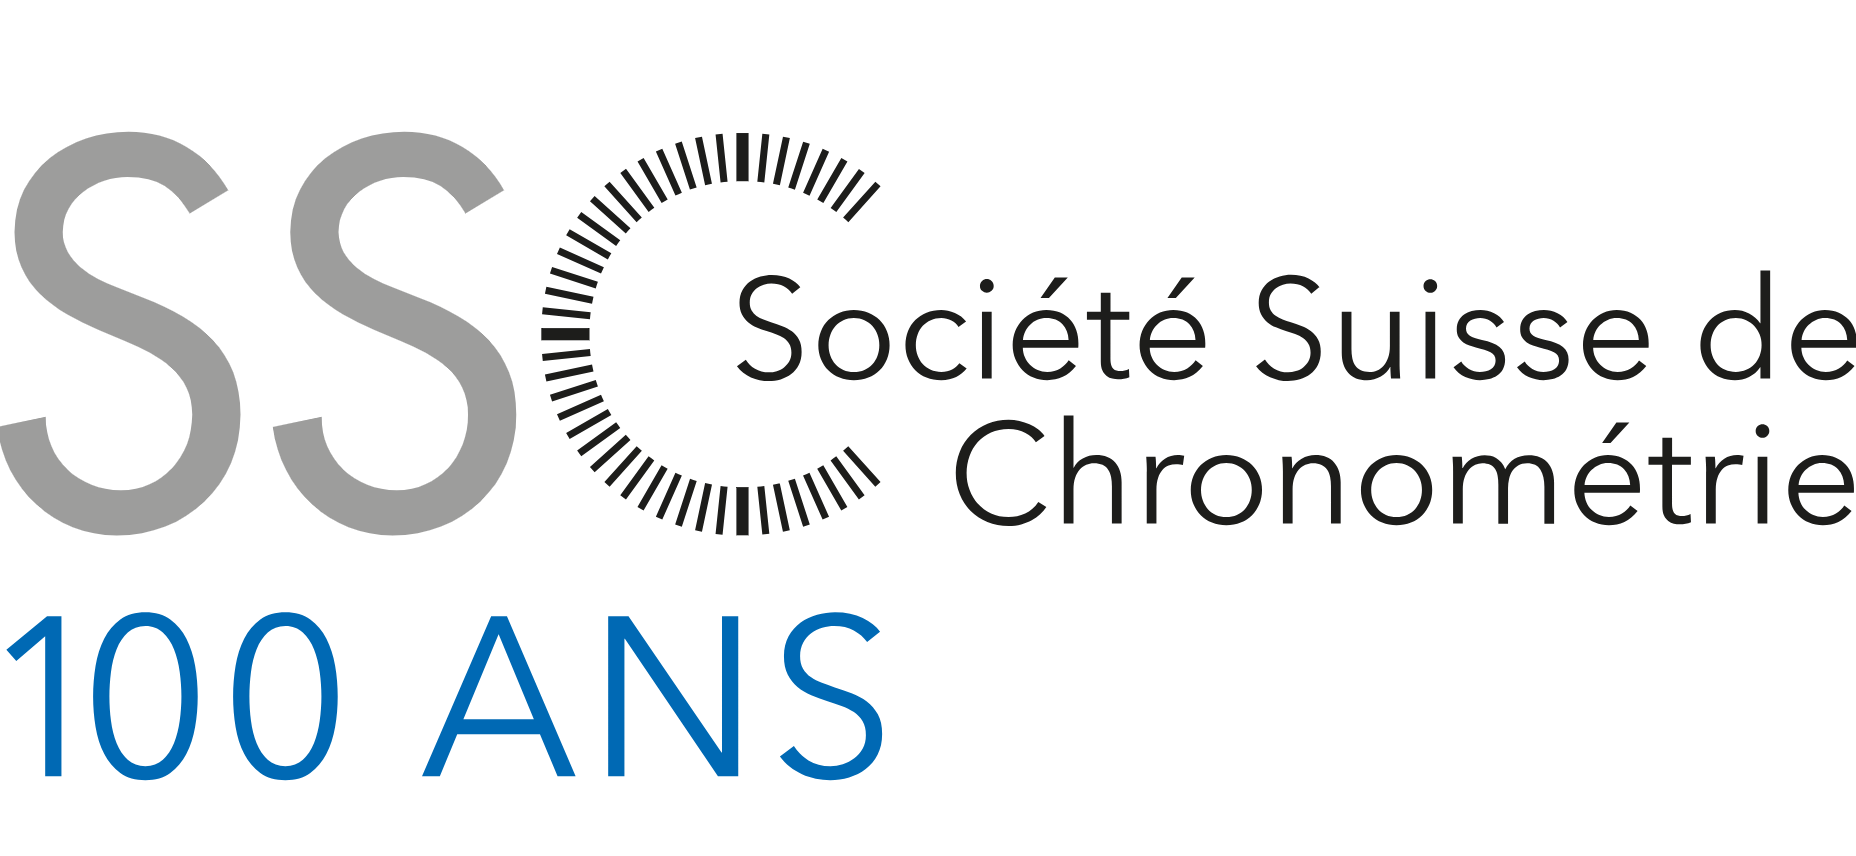 SSC Société Suisse de Chronométrie